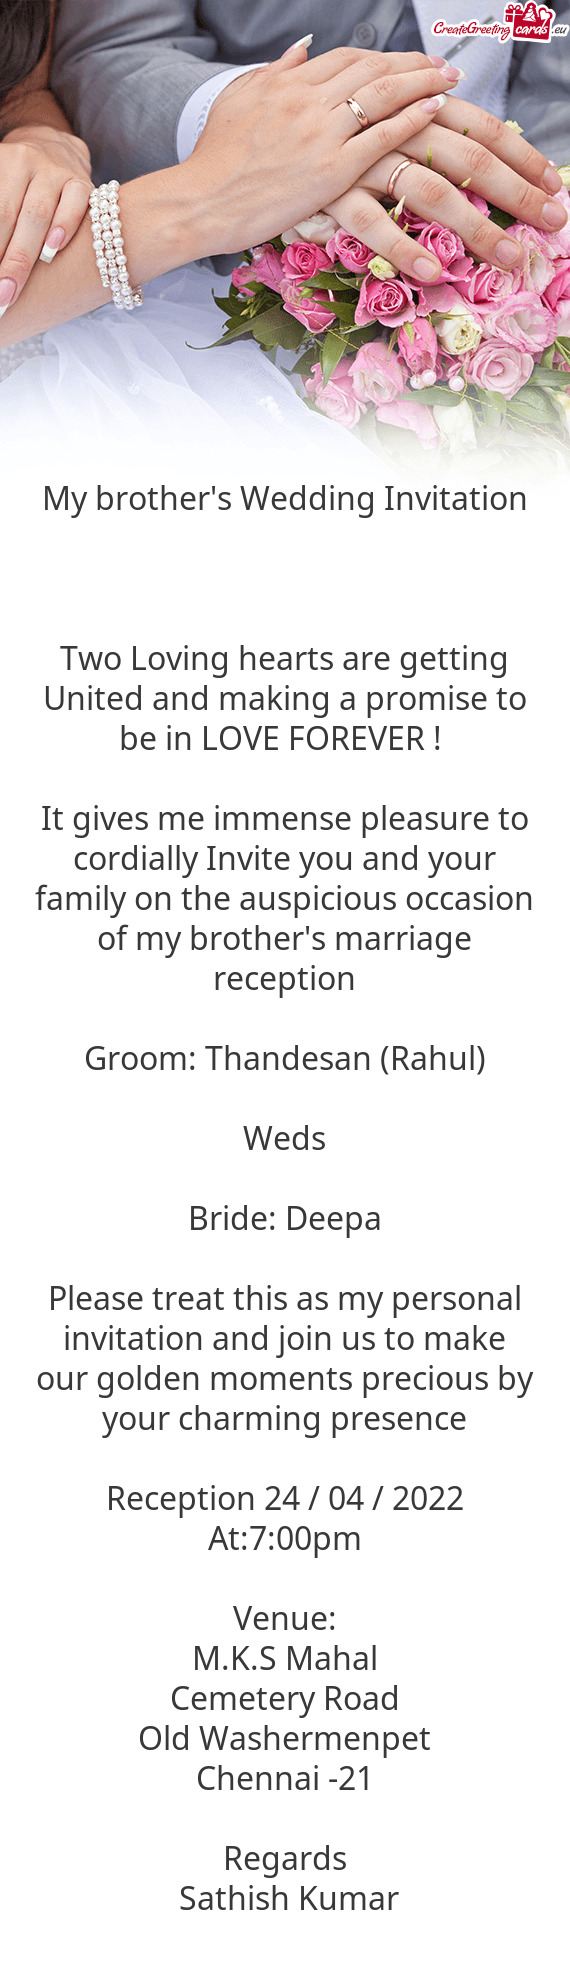 Bride: Deepa